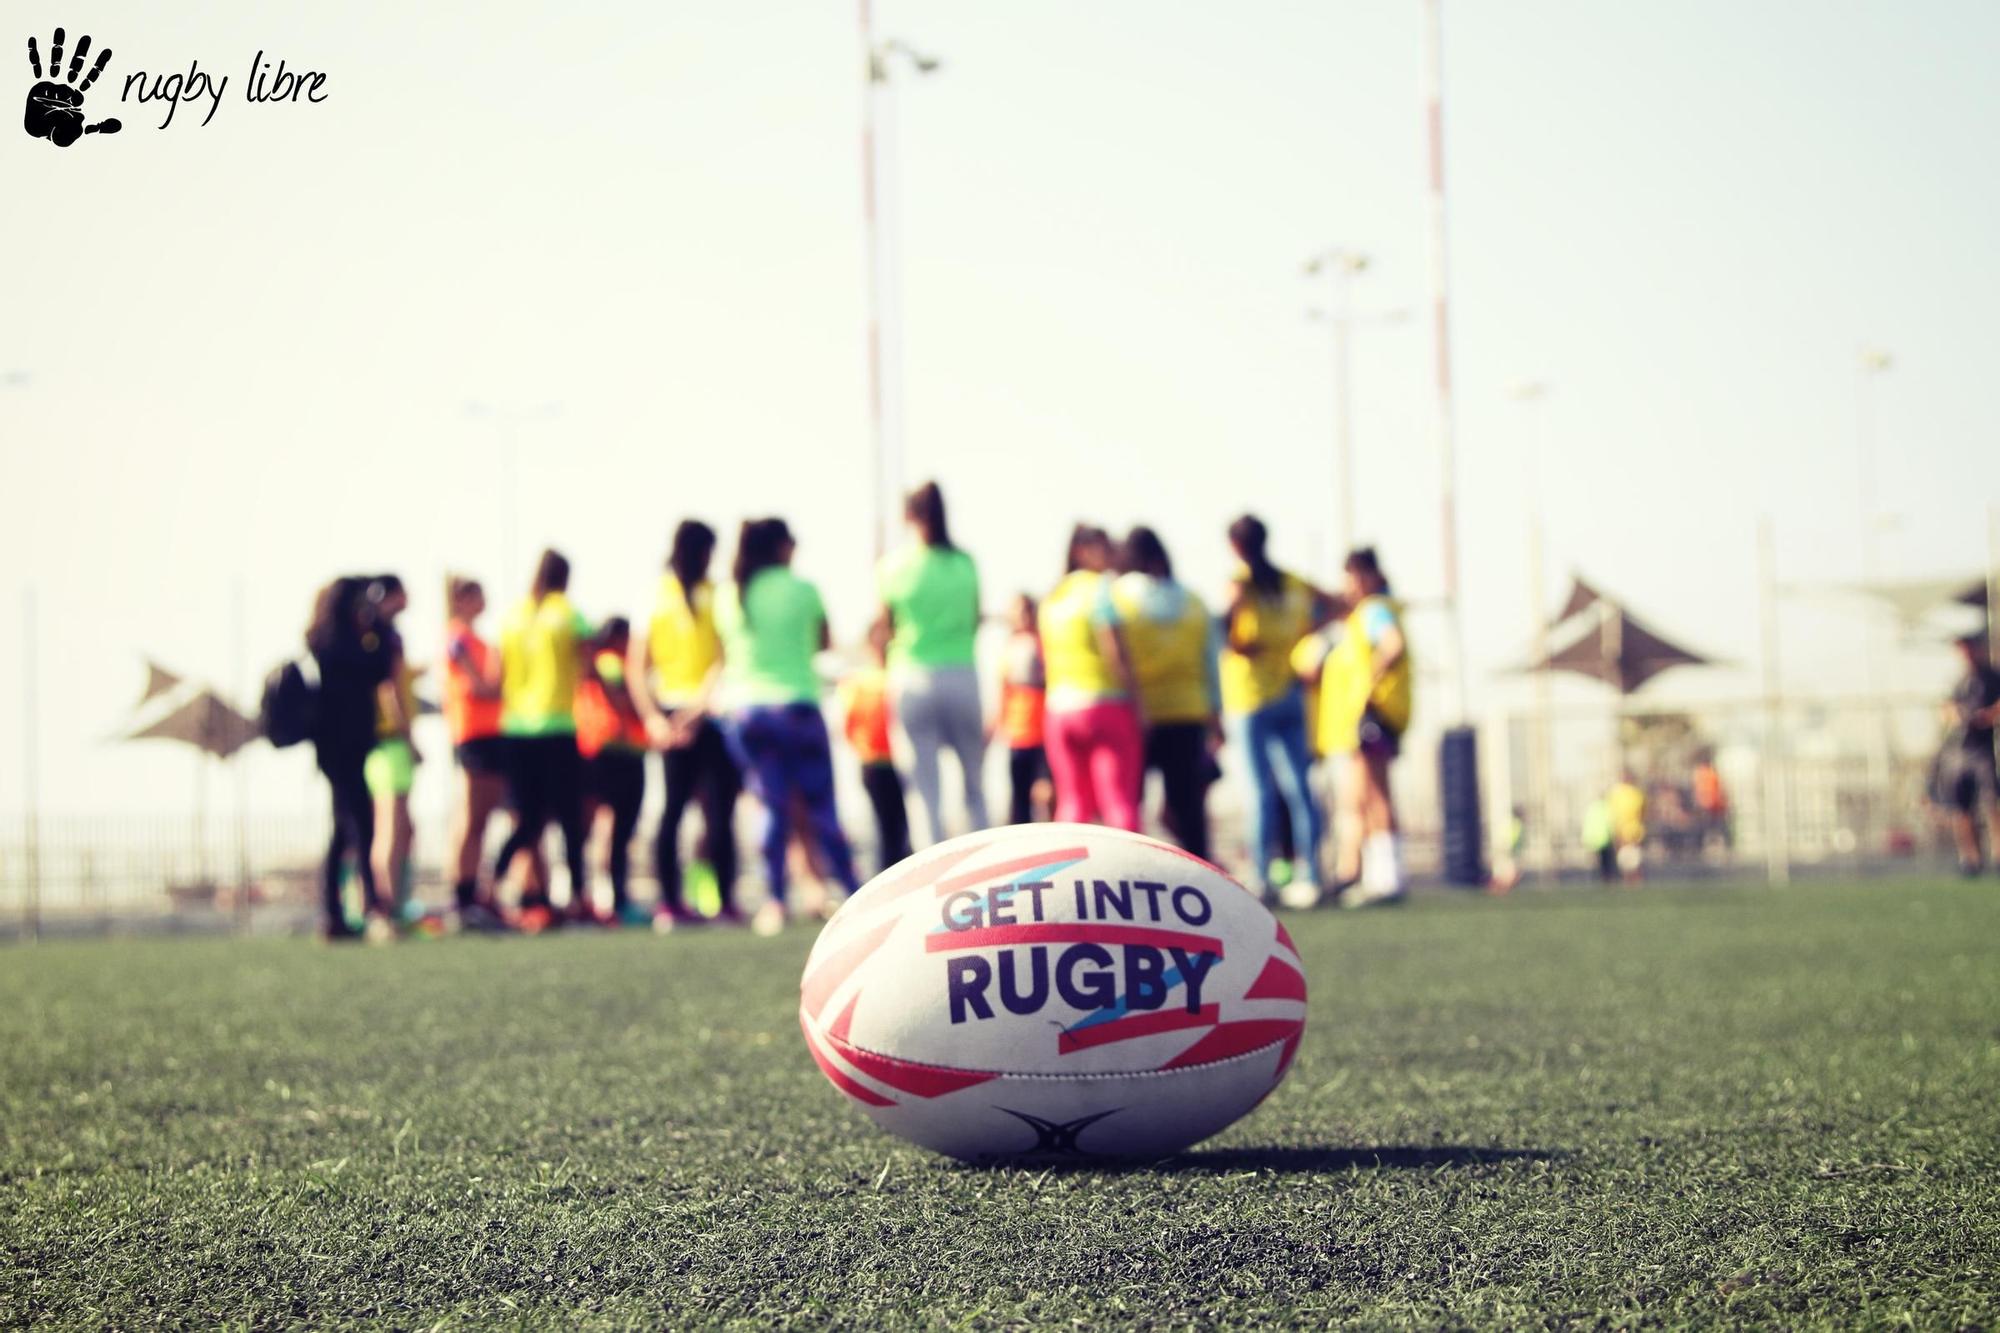 La entidad PGR ONG realizará actividades deportivas y culturales con el propósito de promover la educación en valores, utilizando el rugby como eje central del programa.